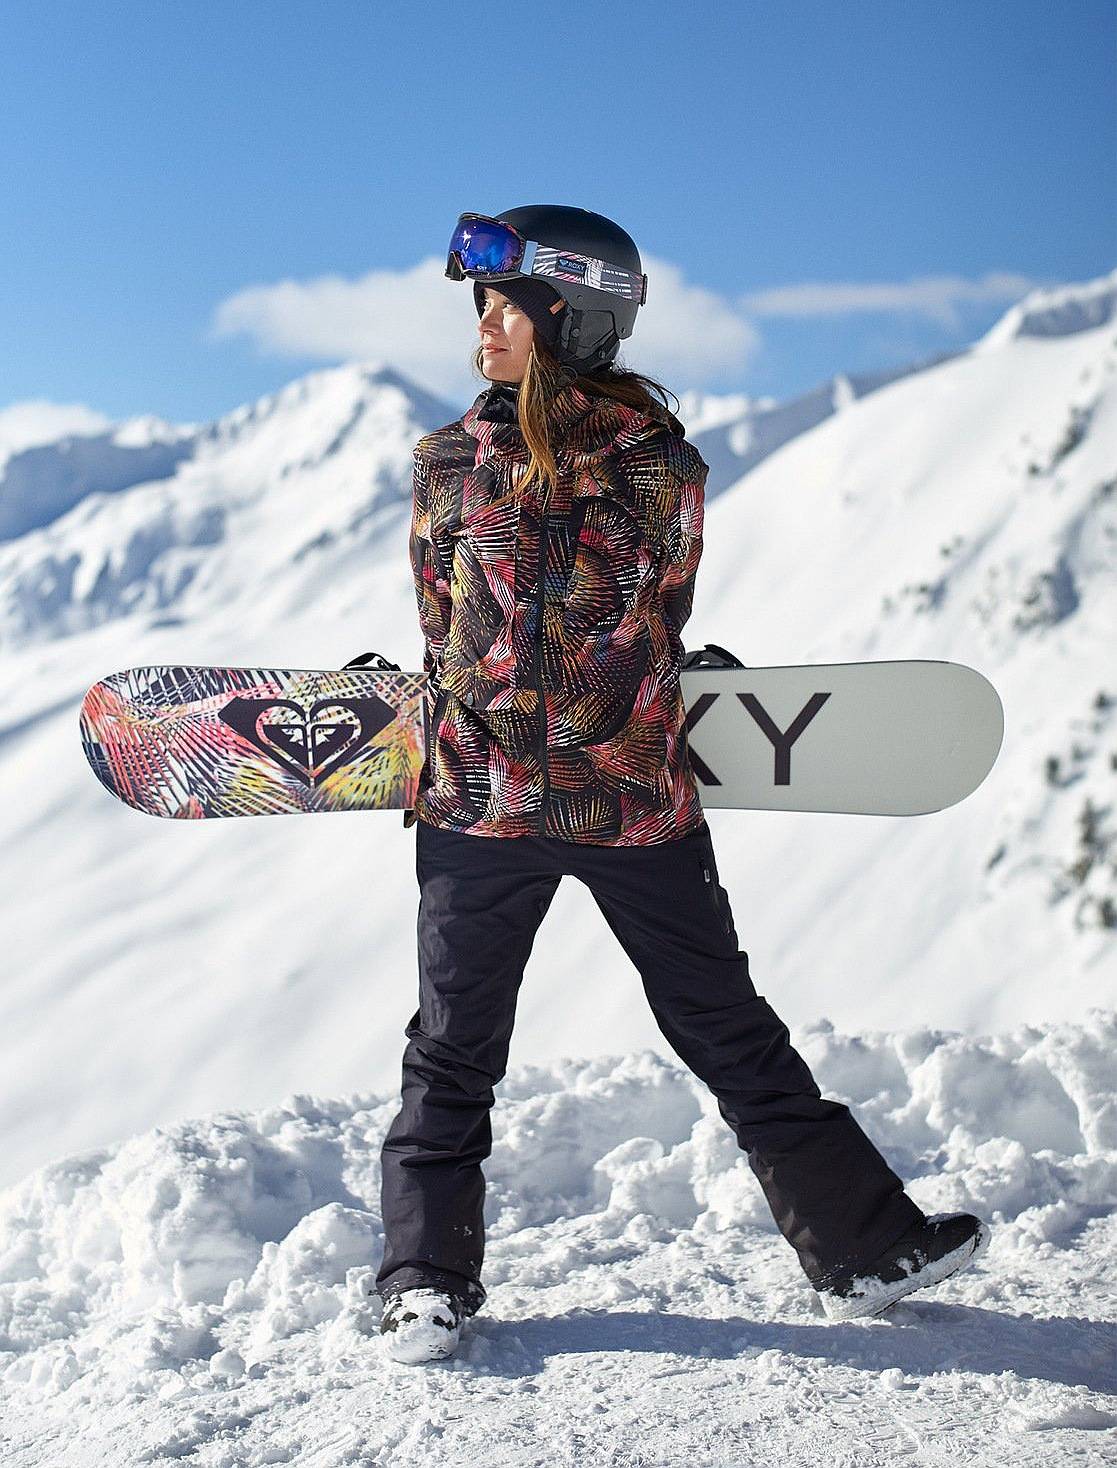 Есть ли разница между куртками для лыж и сноуборда? - дешевая снежная экипировка